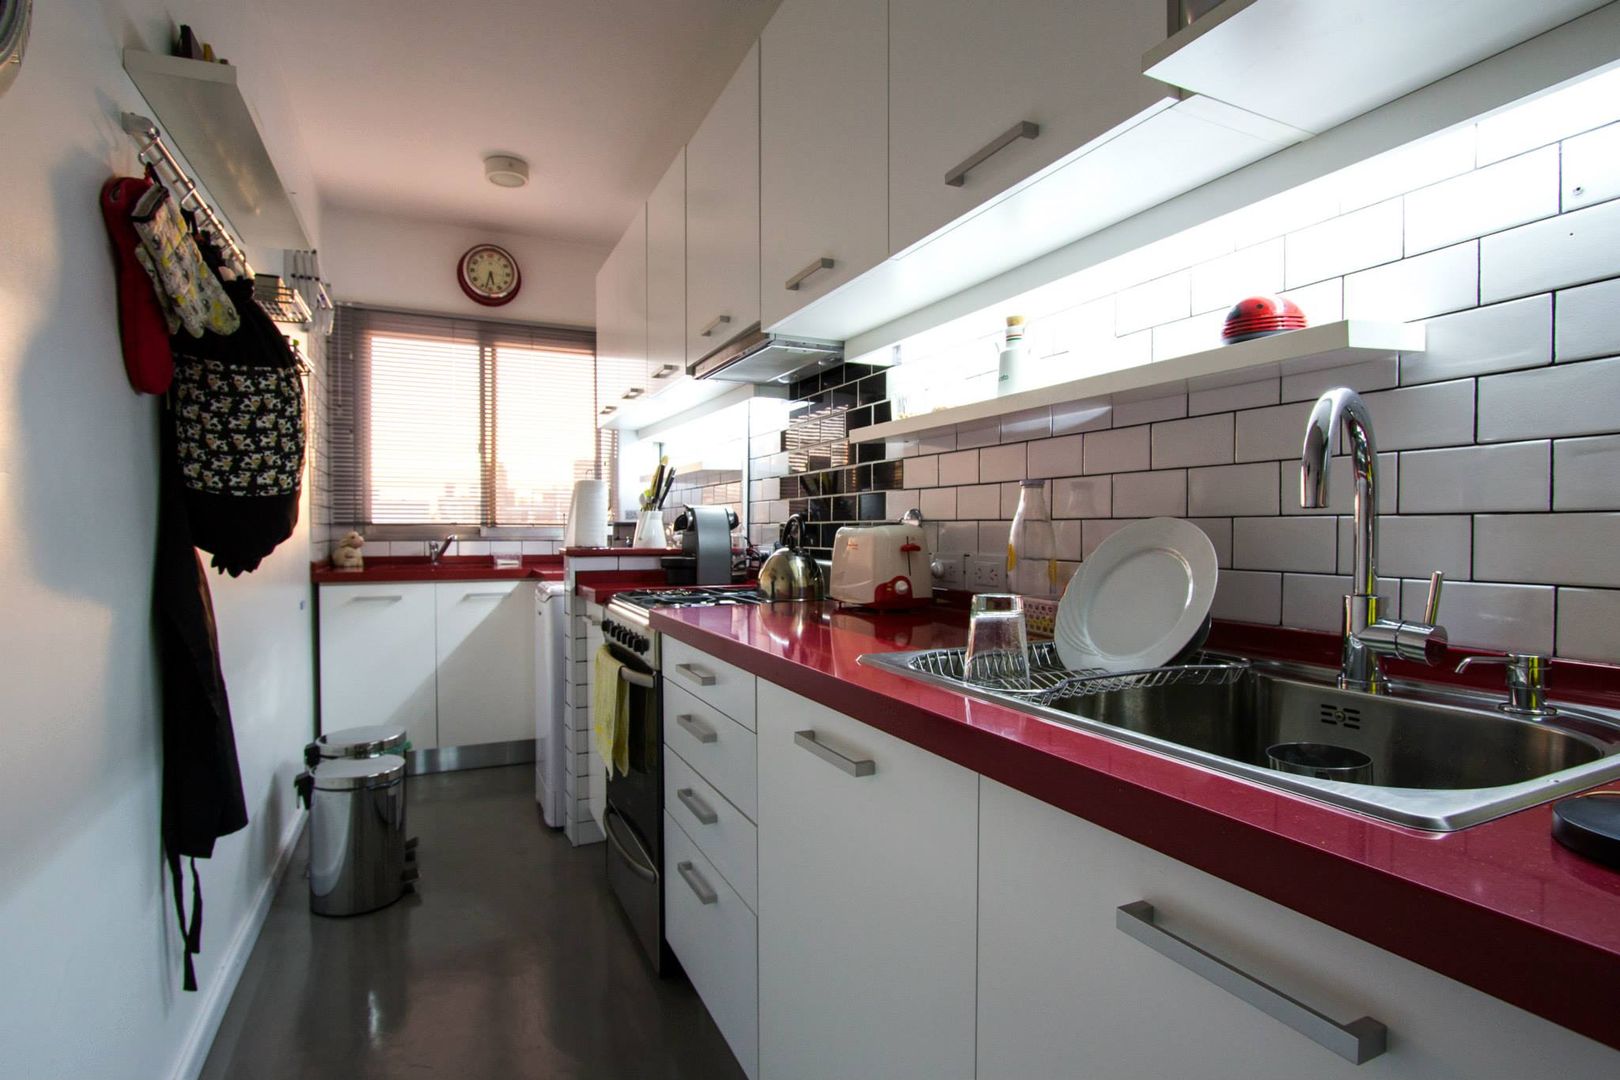 COCINA - SyP, Vorm Vorm Modern kitchen